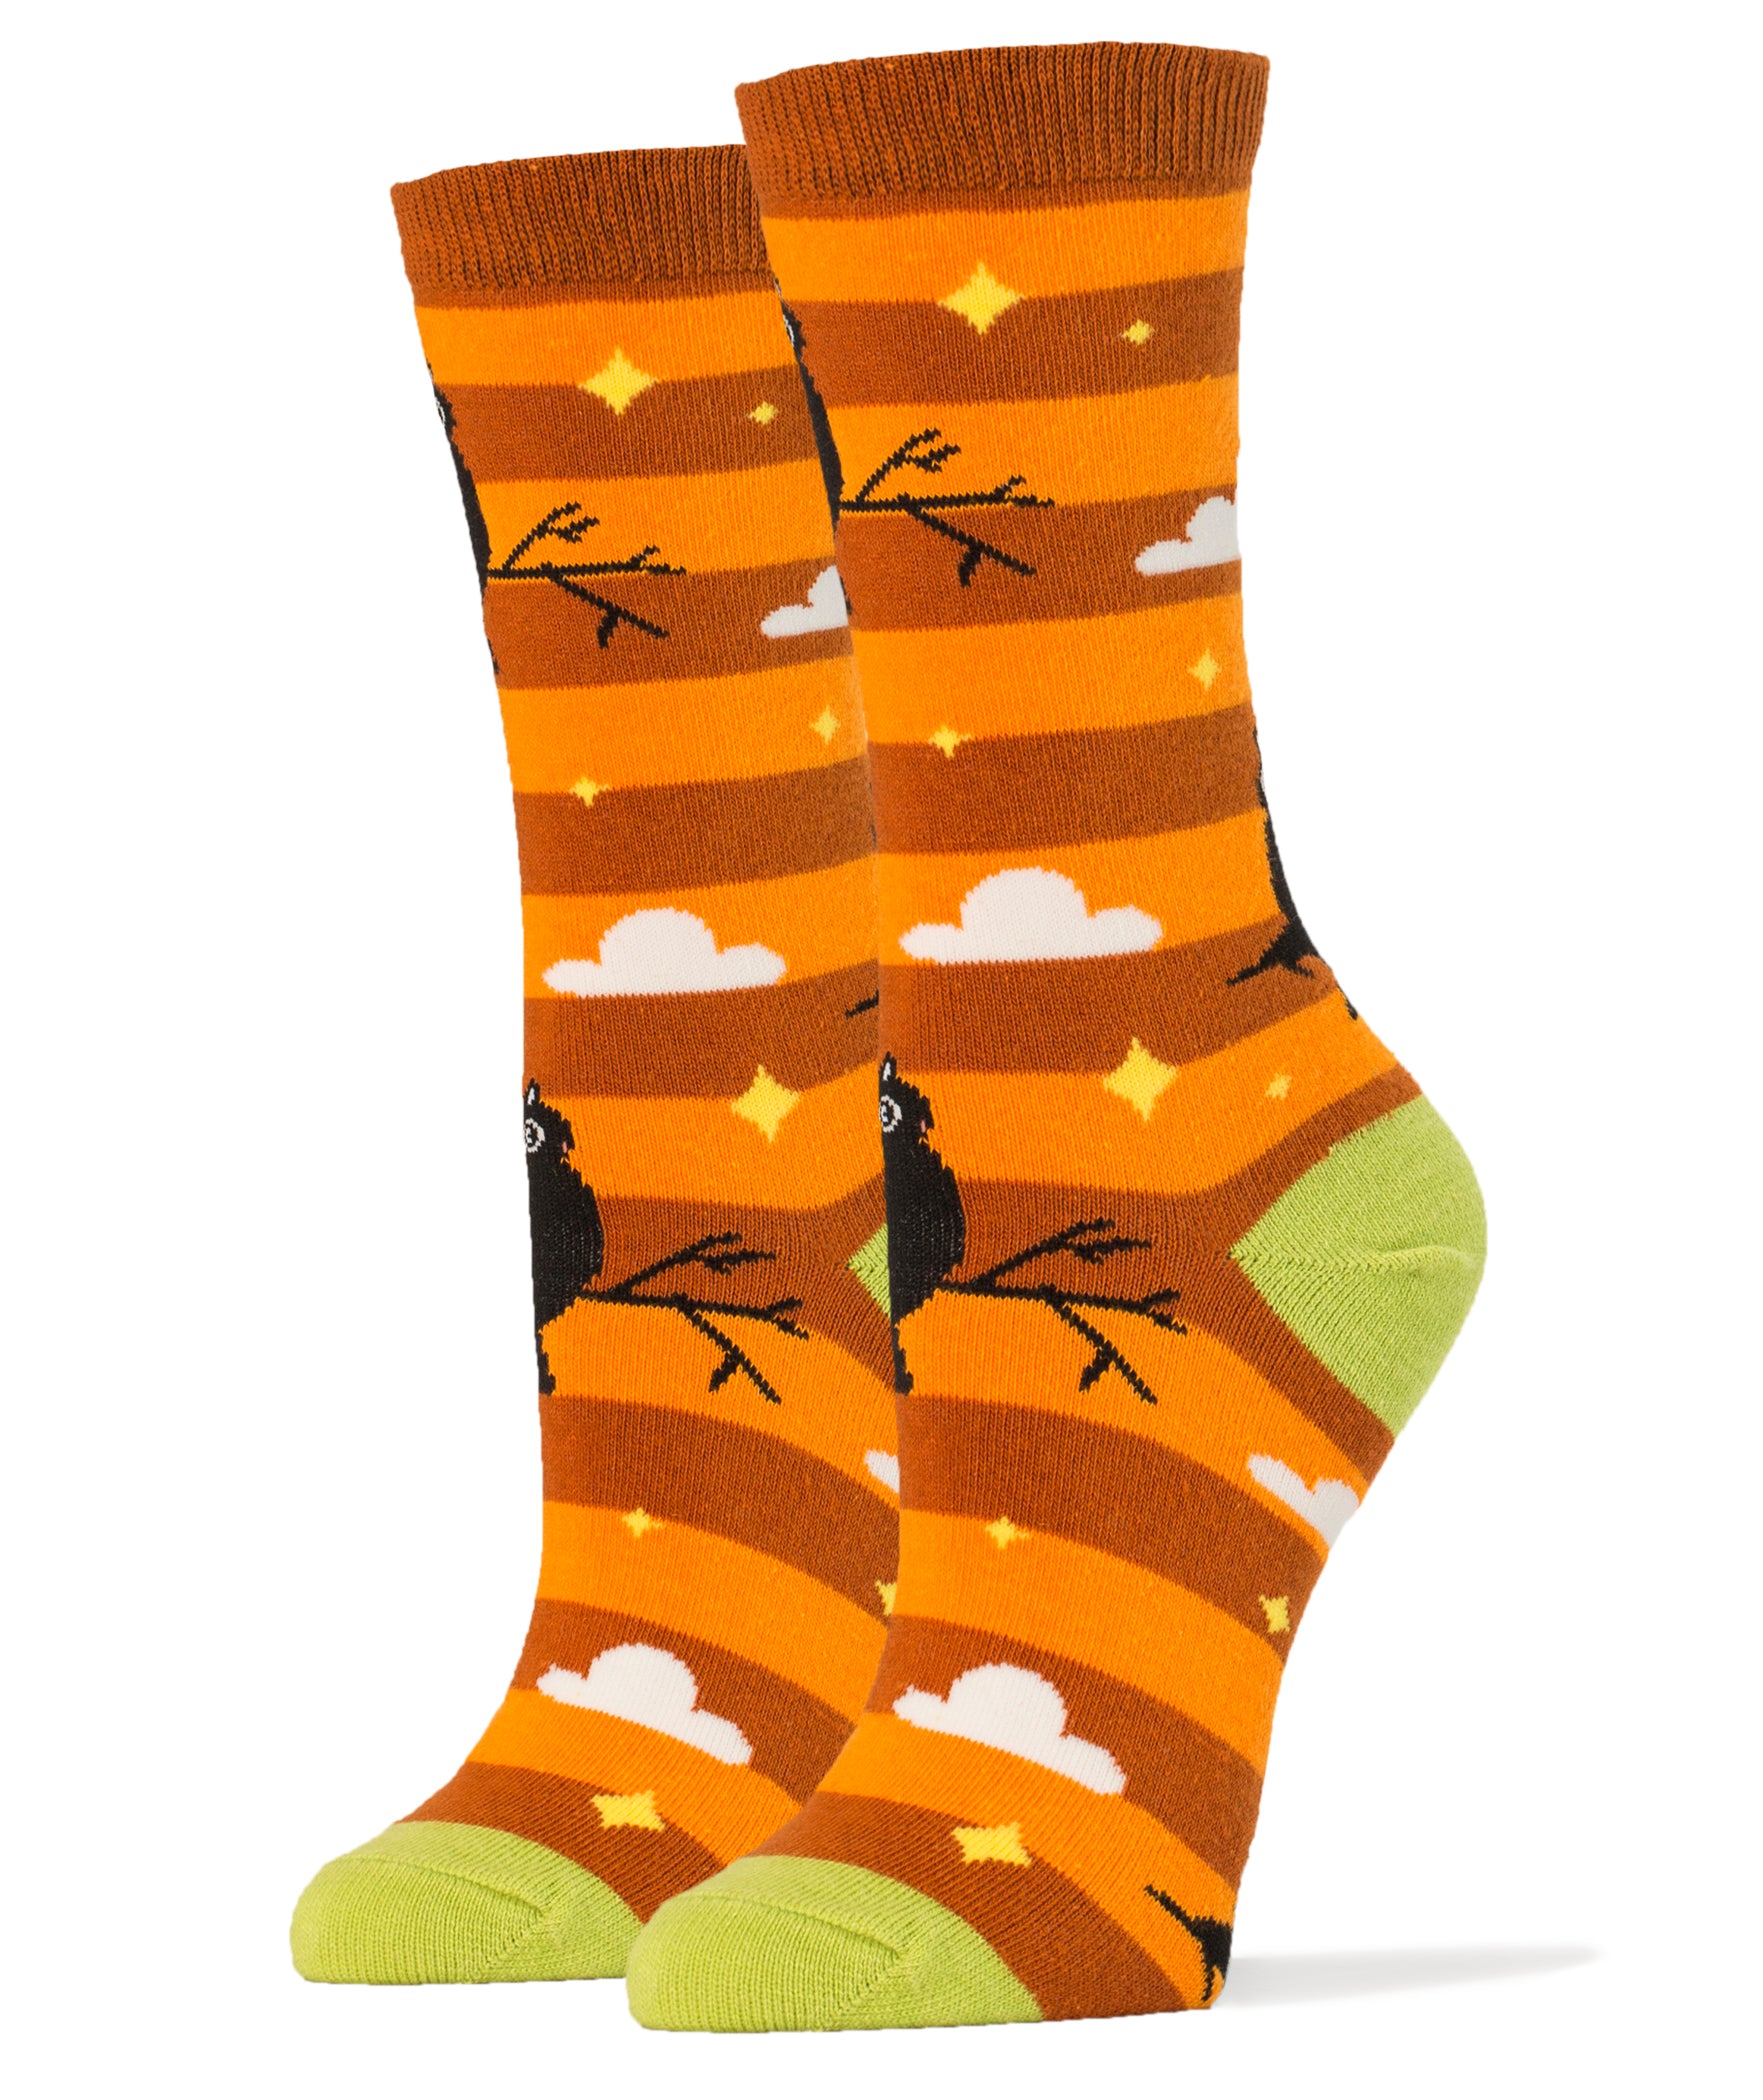 Night Owl Socks | Novelty Crew Socks For Women